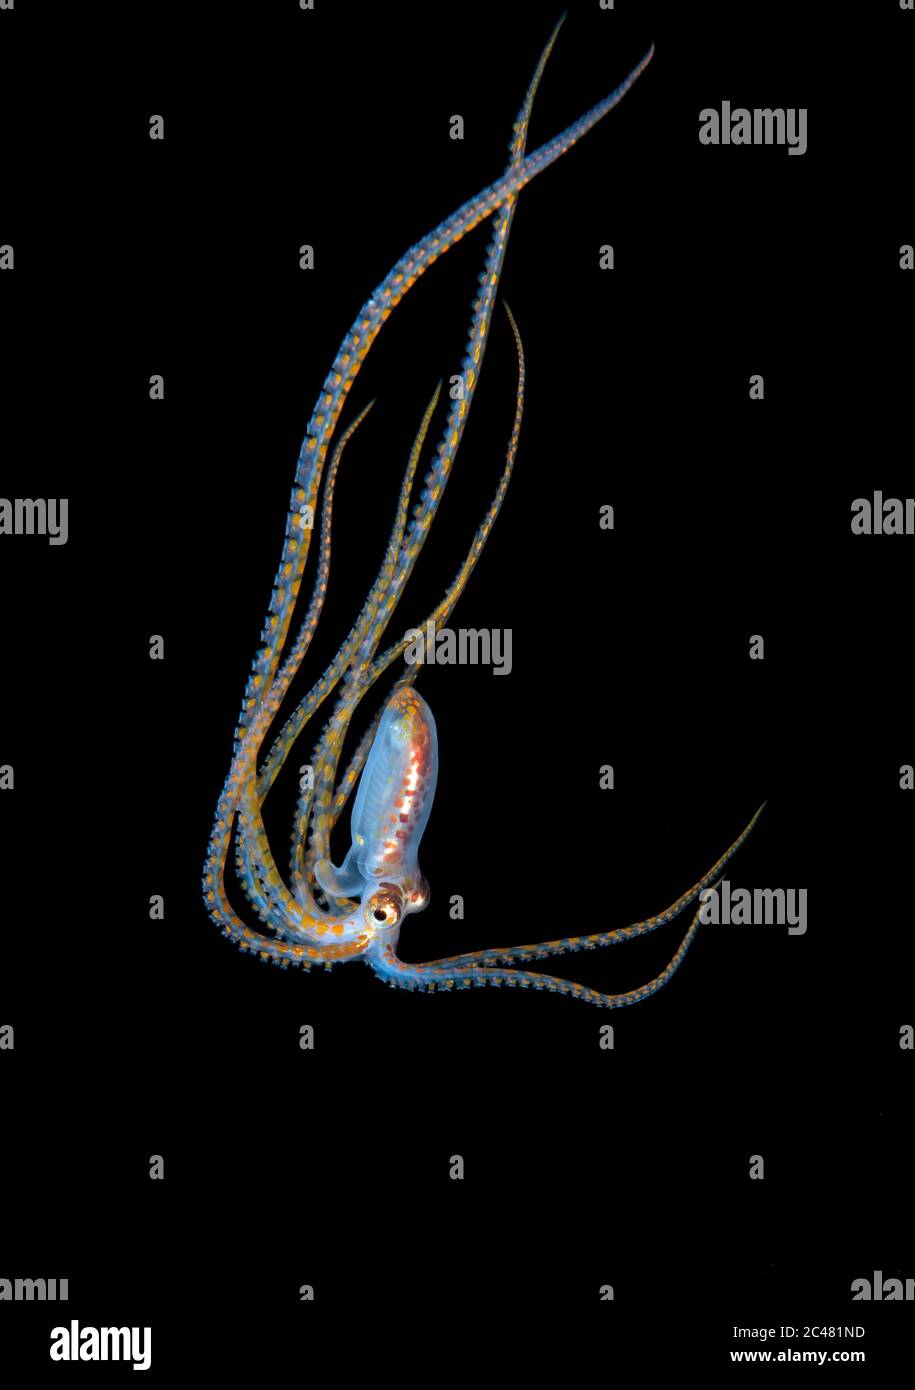 Long Arm Octopus, Abdoopus Species, paralarva, fotografiert bei 80 Fuß während eines Schwarzwassertauchgangs über tiefem Wasser. Anilao, Philippinen, Pazifischer Ozean. Stockfoto